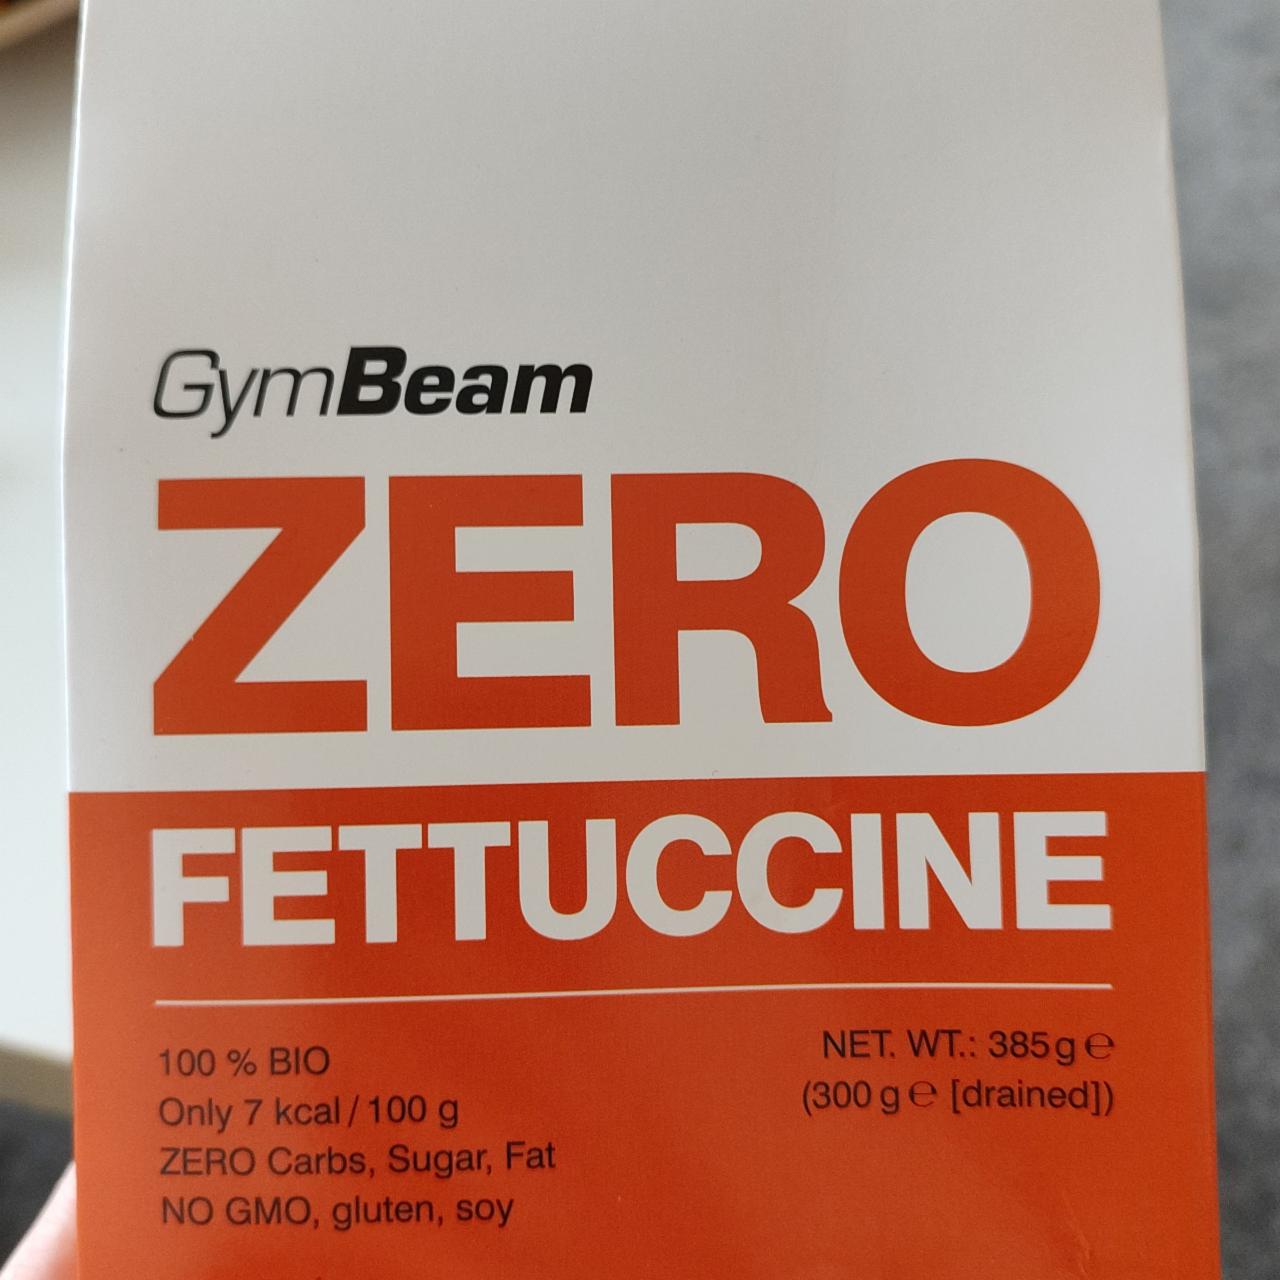 Zdjęcia - Zero fettuccine Gym Beam